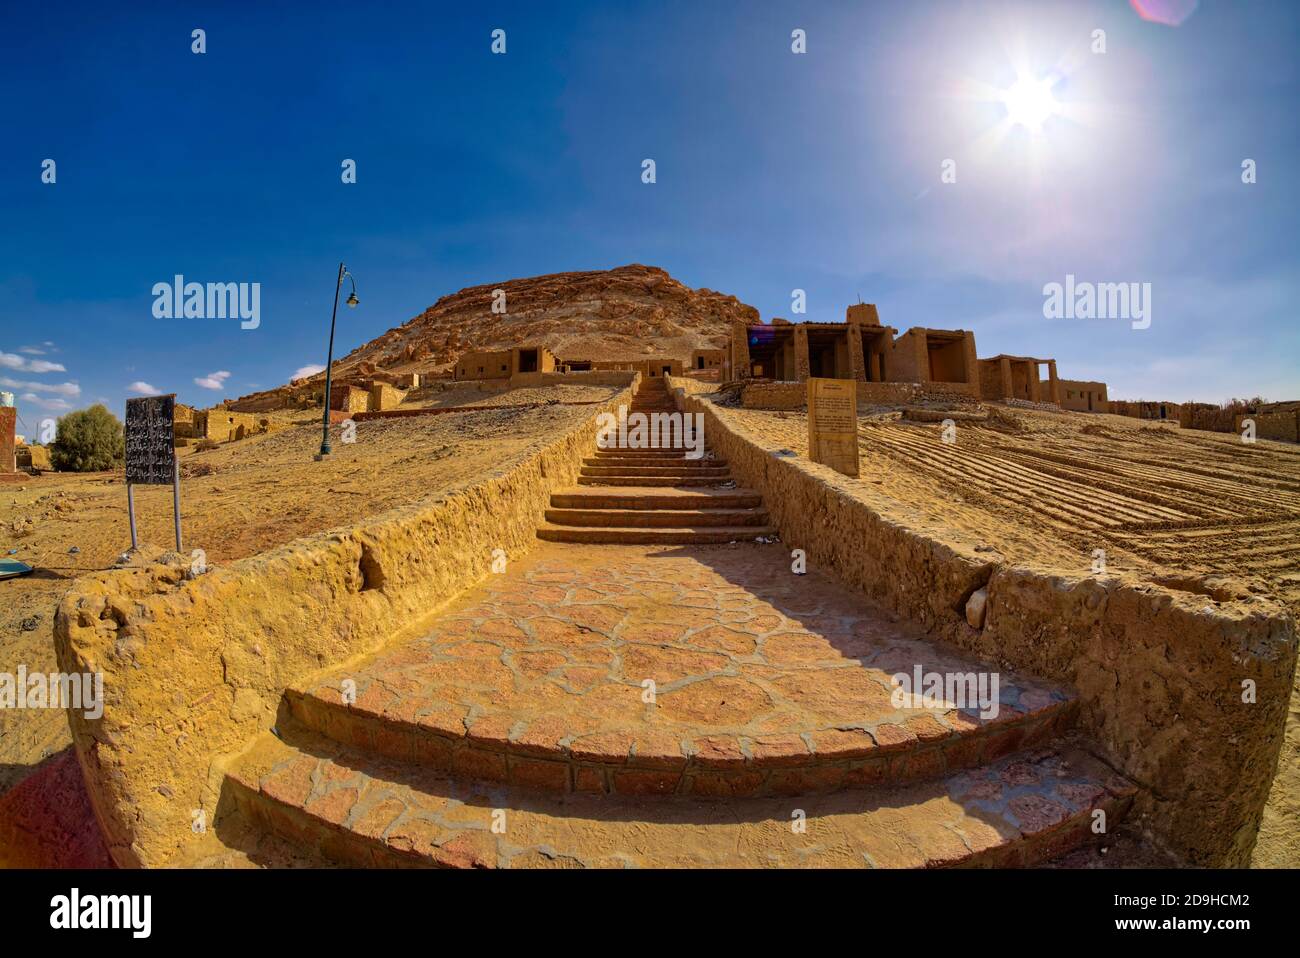 Le centre de la ville de Siwa est dominé par les formes organiques spectaculaires des vestiges de la forteresse Shali en briques de boue du XIIIe siècle. Construit à partir d'un mater Banque D'Images